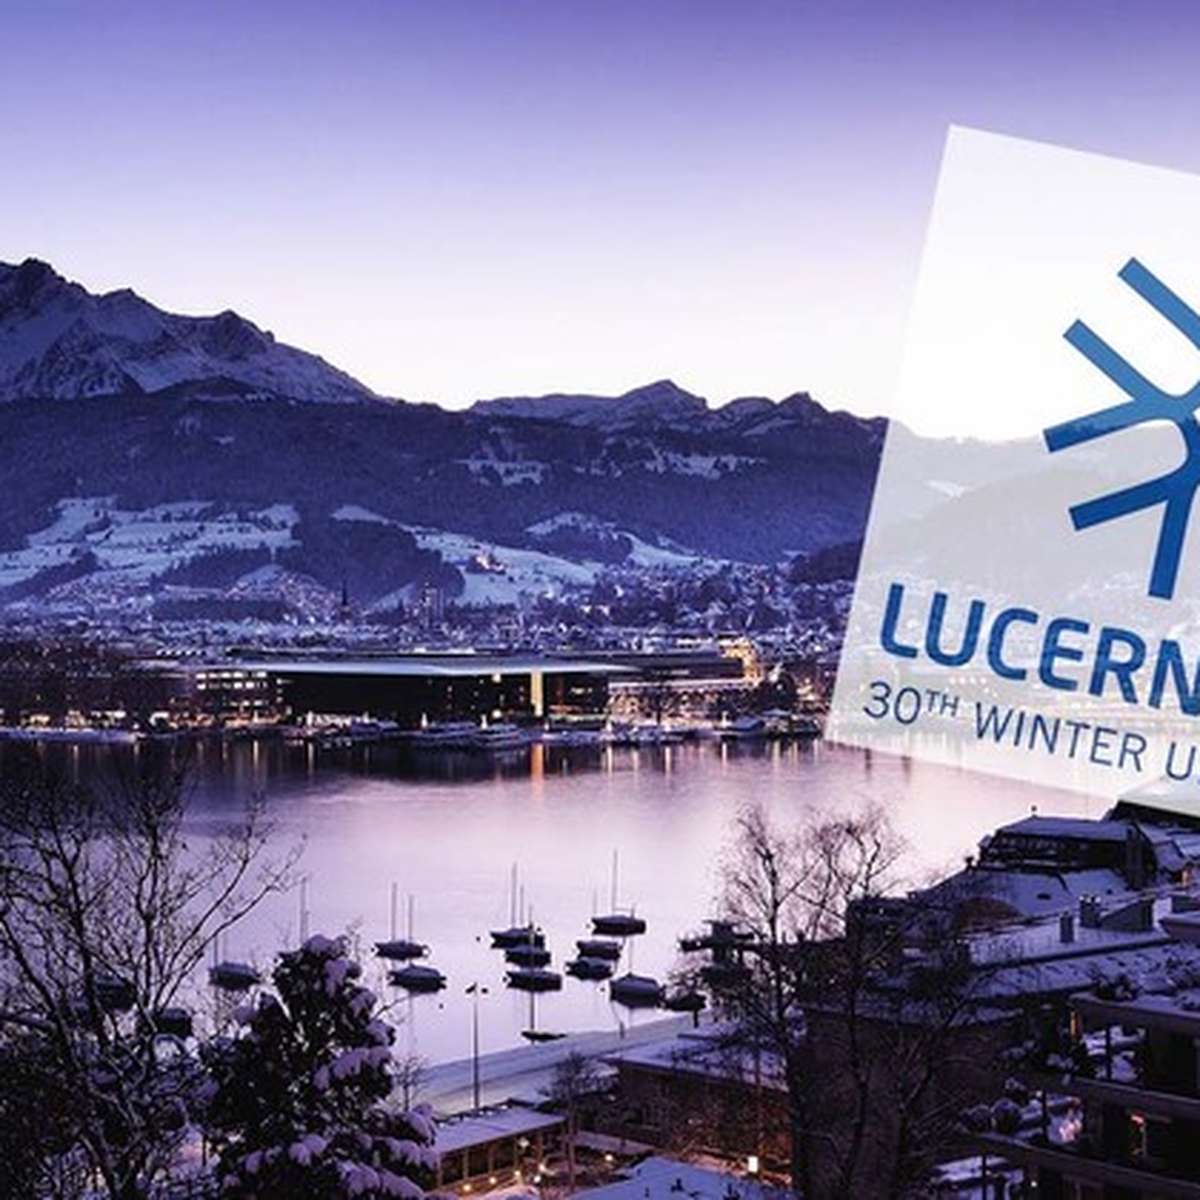 Verschiebung macht die Winteruniversiade in Luzern teurer